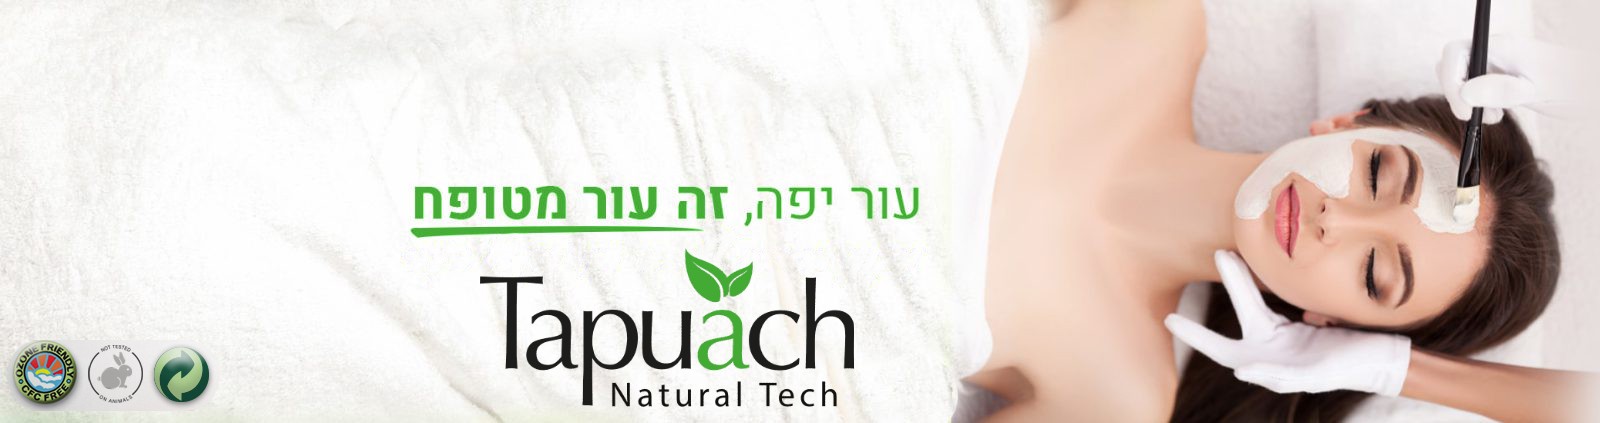 תפוח טכנולוגיות טבעיות - Tapuach Natural Tech<br>קוסמטיקה מקצועית